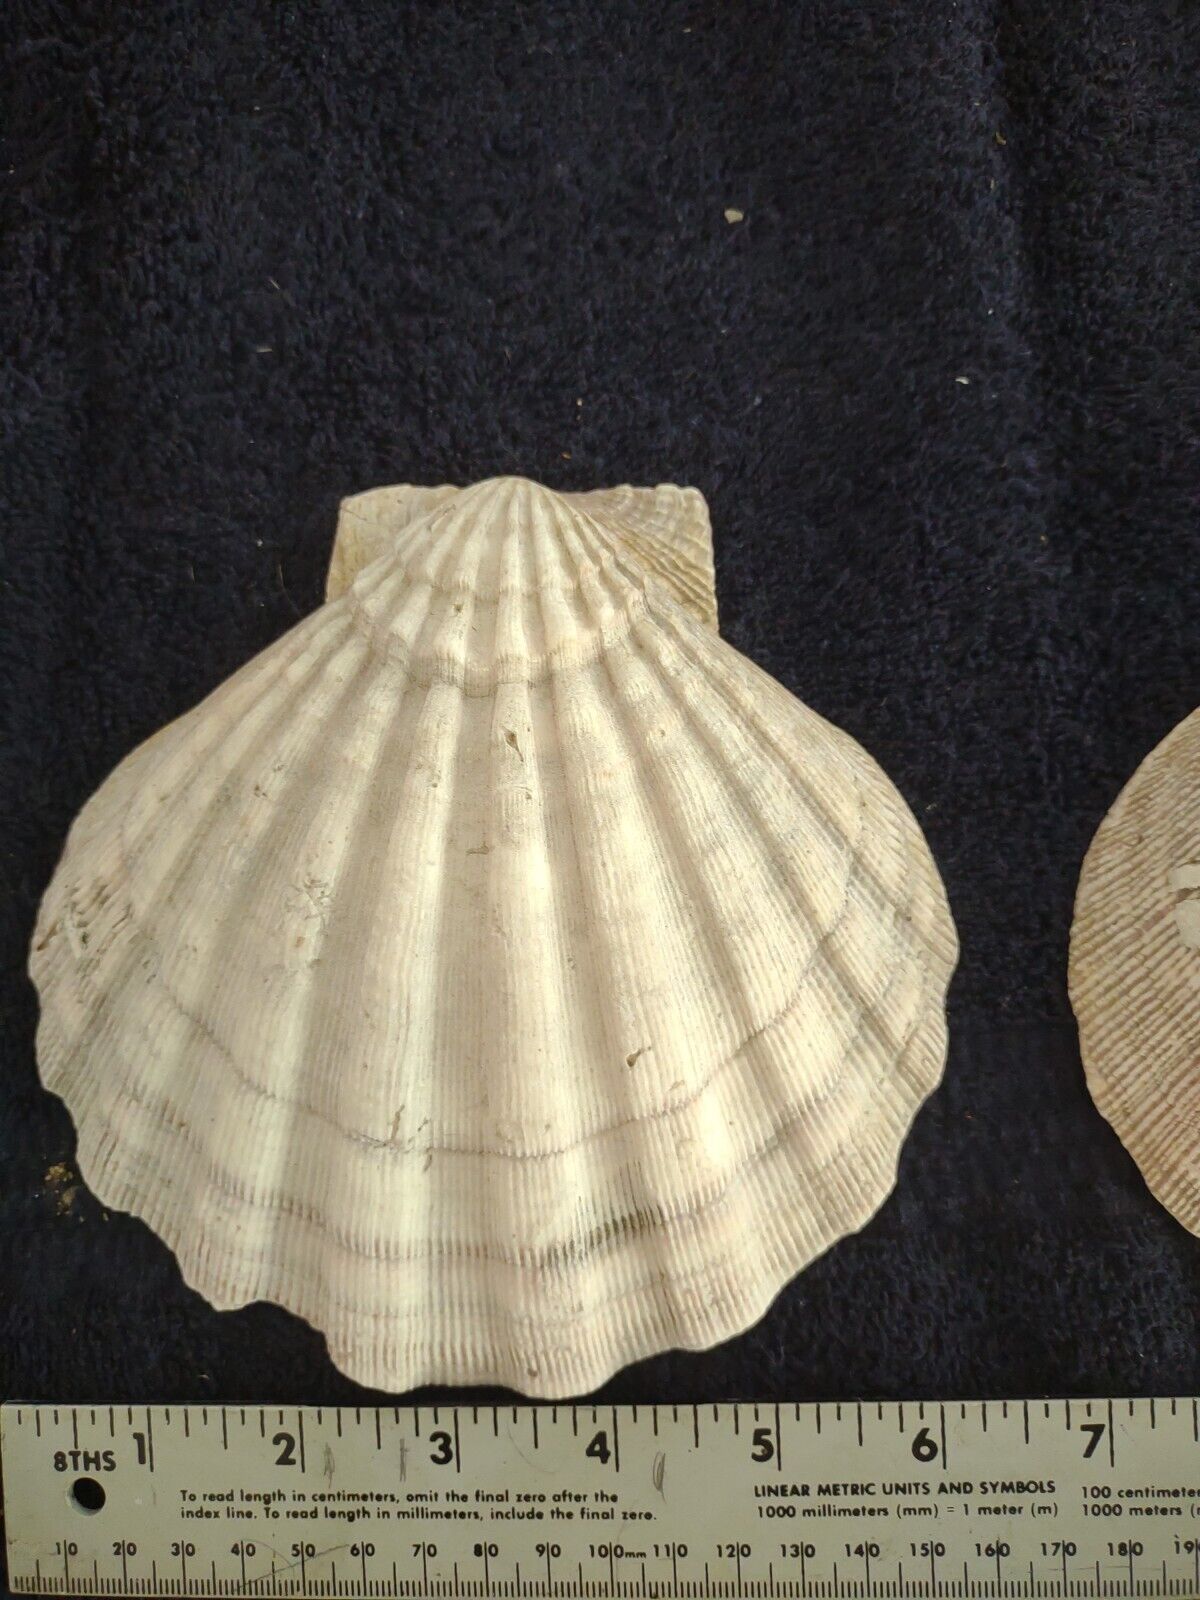 Two Large Chesapectus Jefferson Scallop Seashells